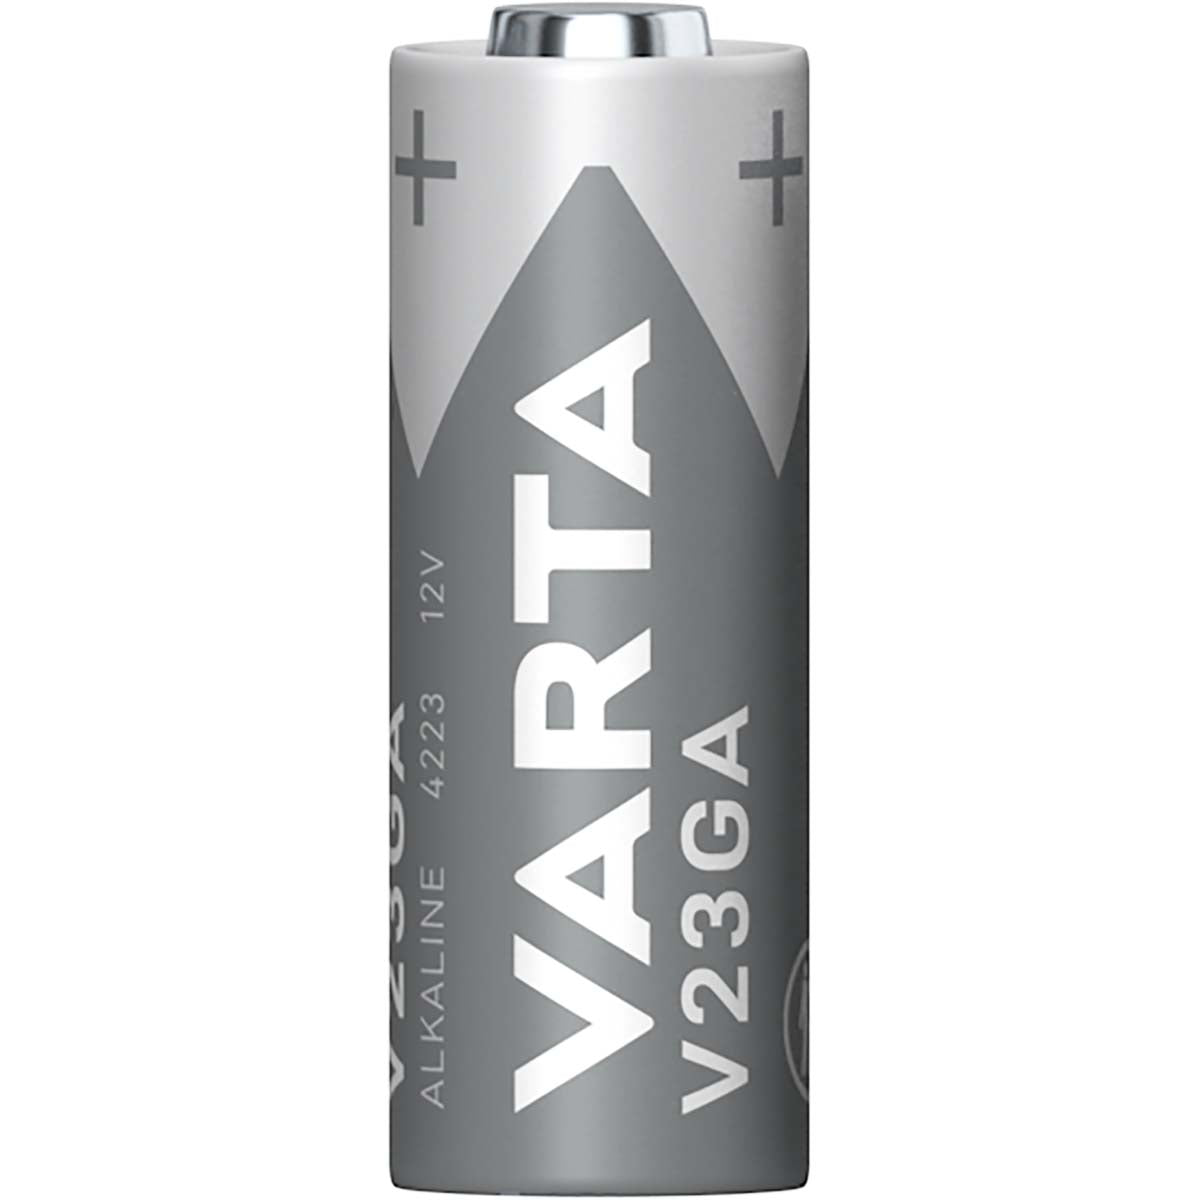 Alkaline Batterie 23A | 12 V DC | 50 mAh | 1-Blister | Grau / Silber